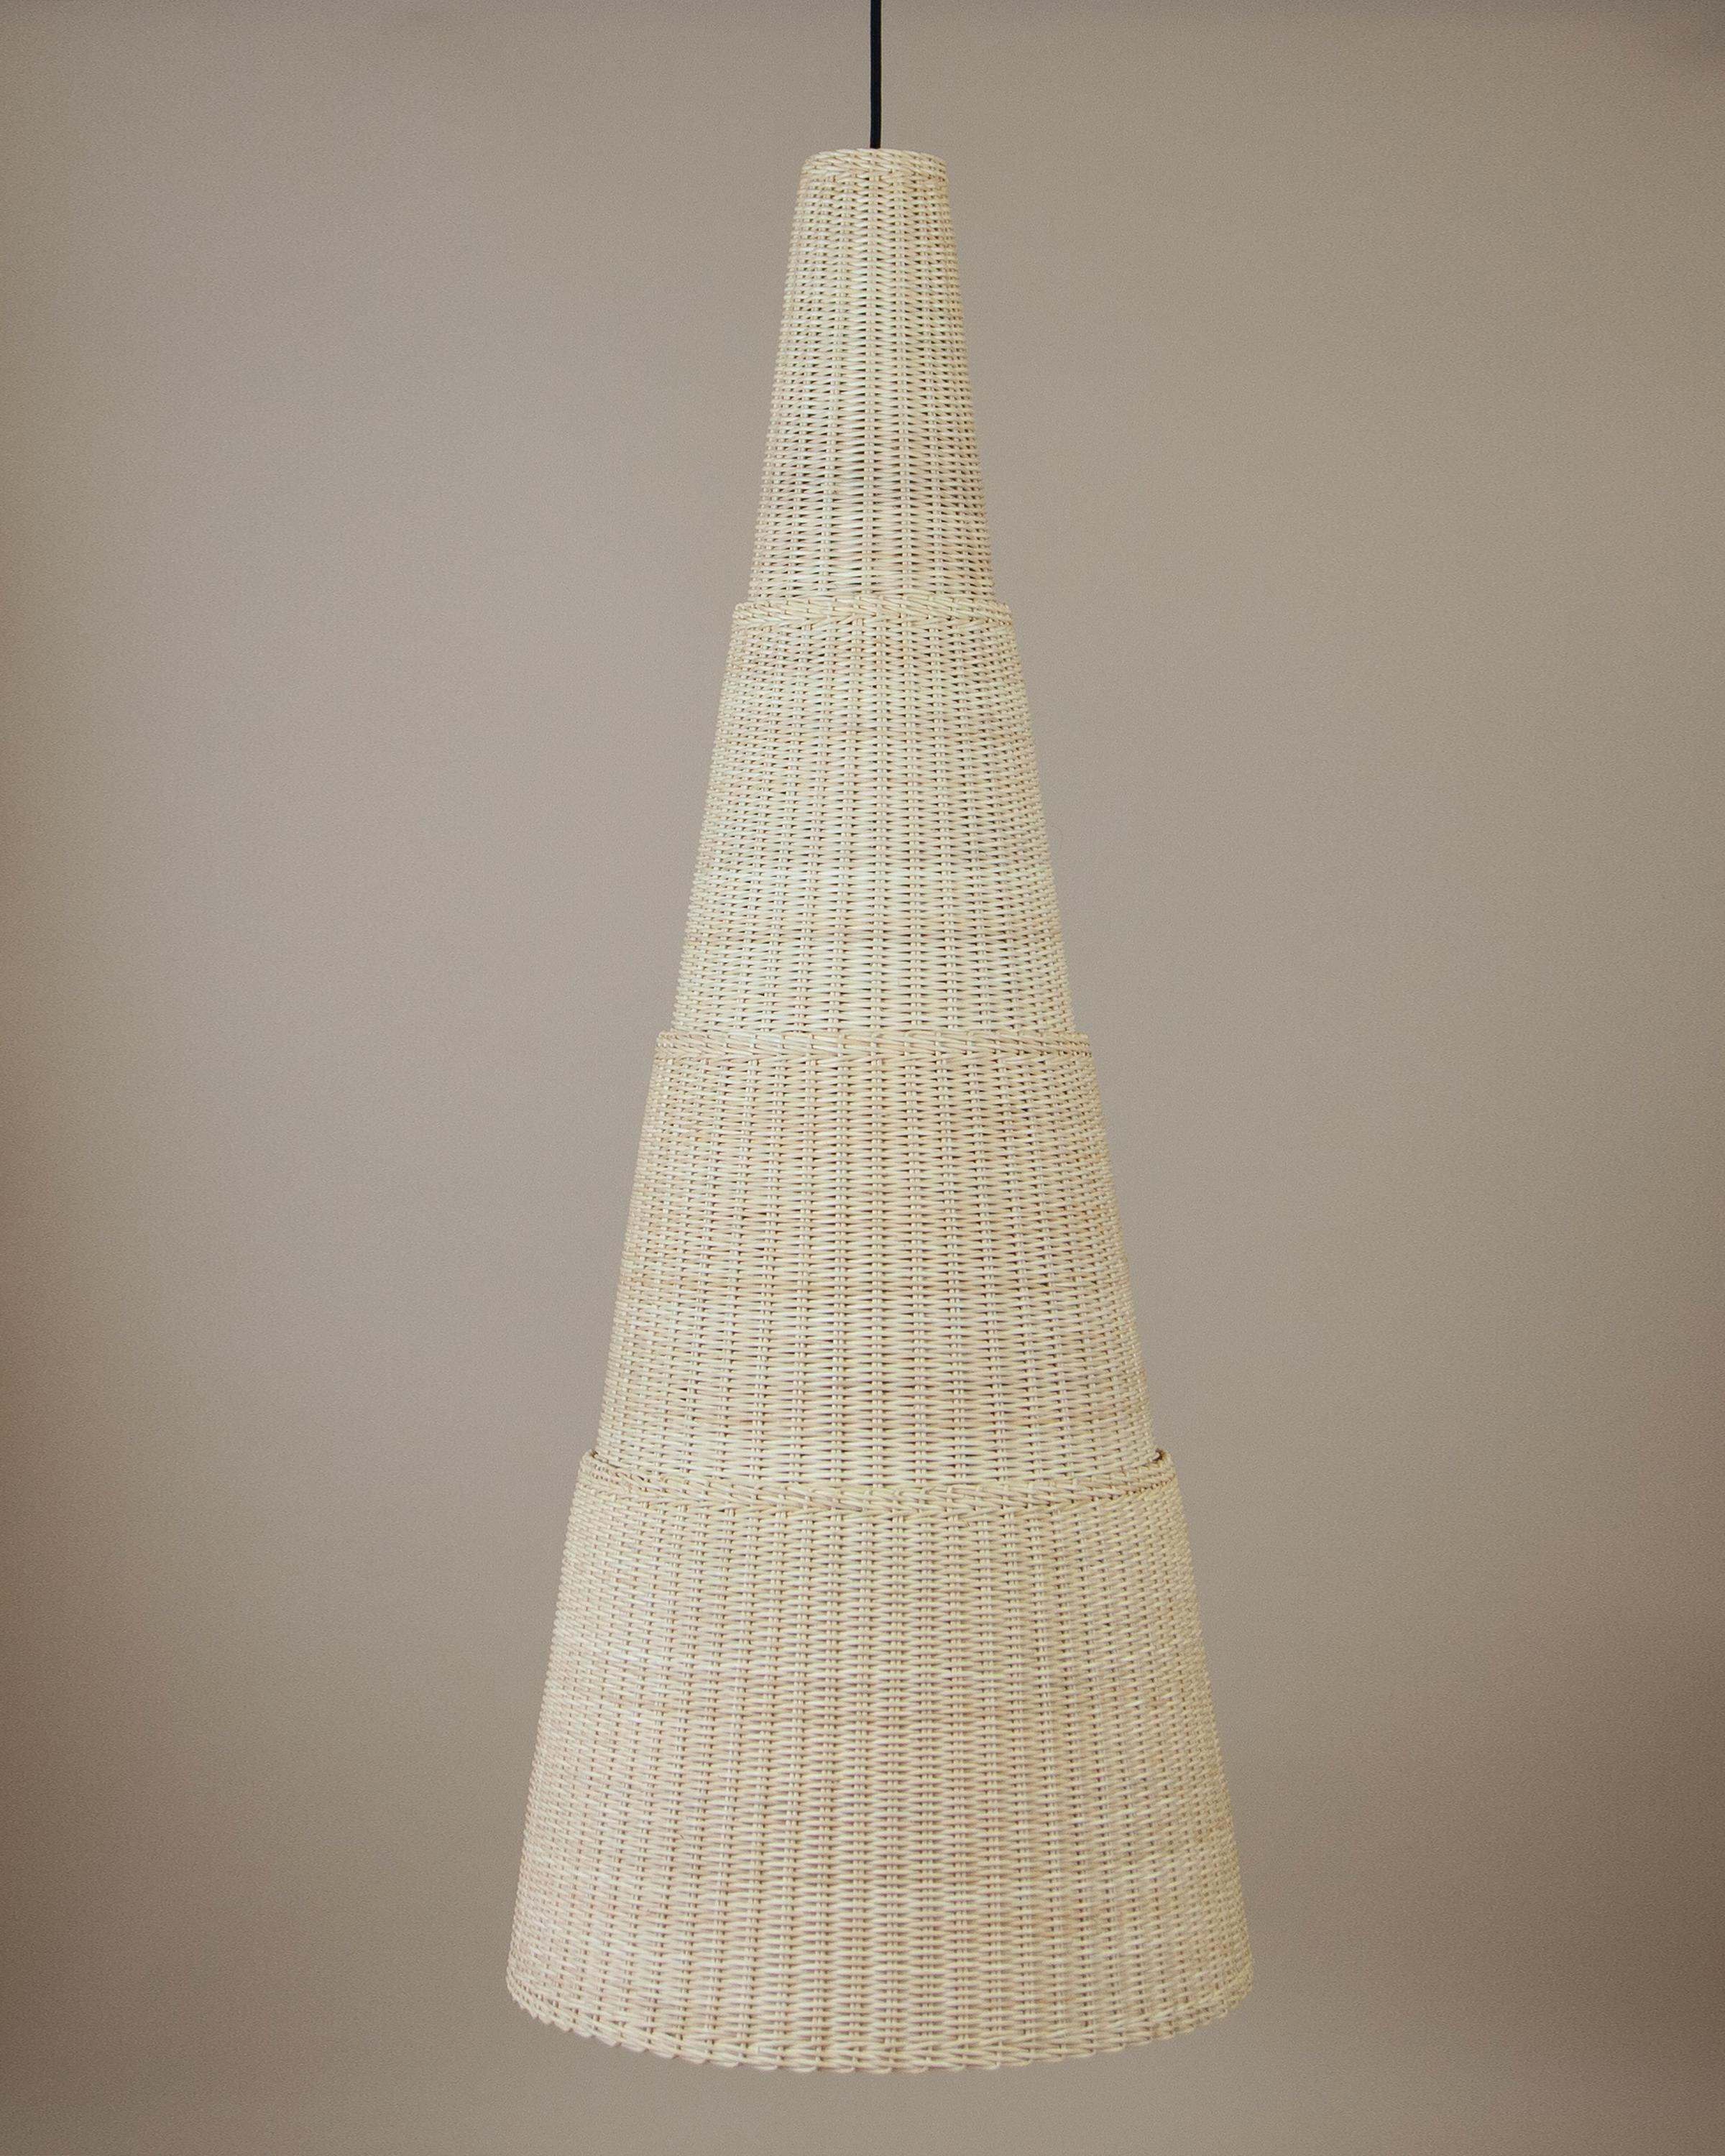 Beige (Natural) Bottega Intreccio Seia 140 Pendant in Bamboo Wicker, by Maurizio Bernabei 2